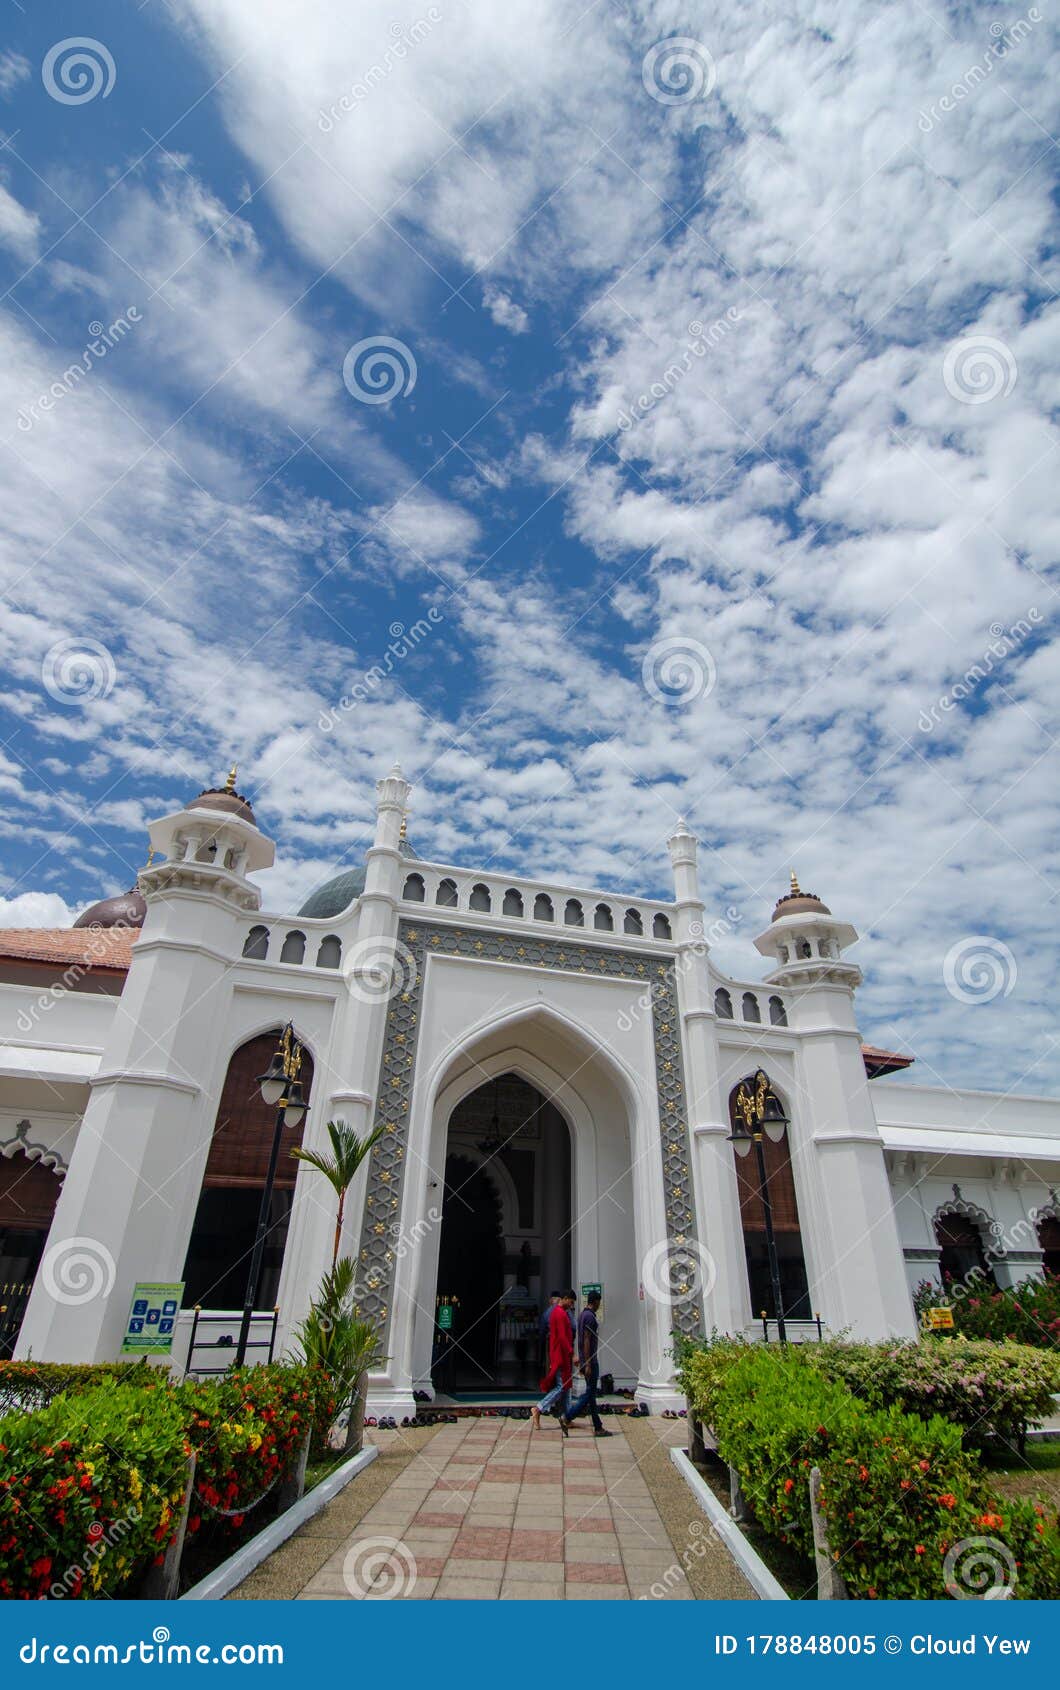 Facade Of Masjid Kapitan Keling. Editorial Image - Image ...